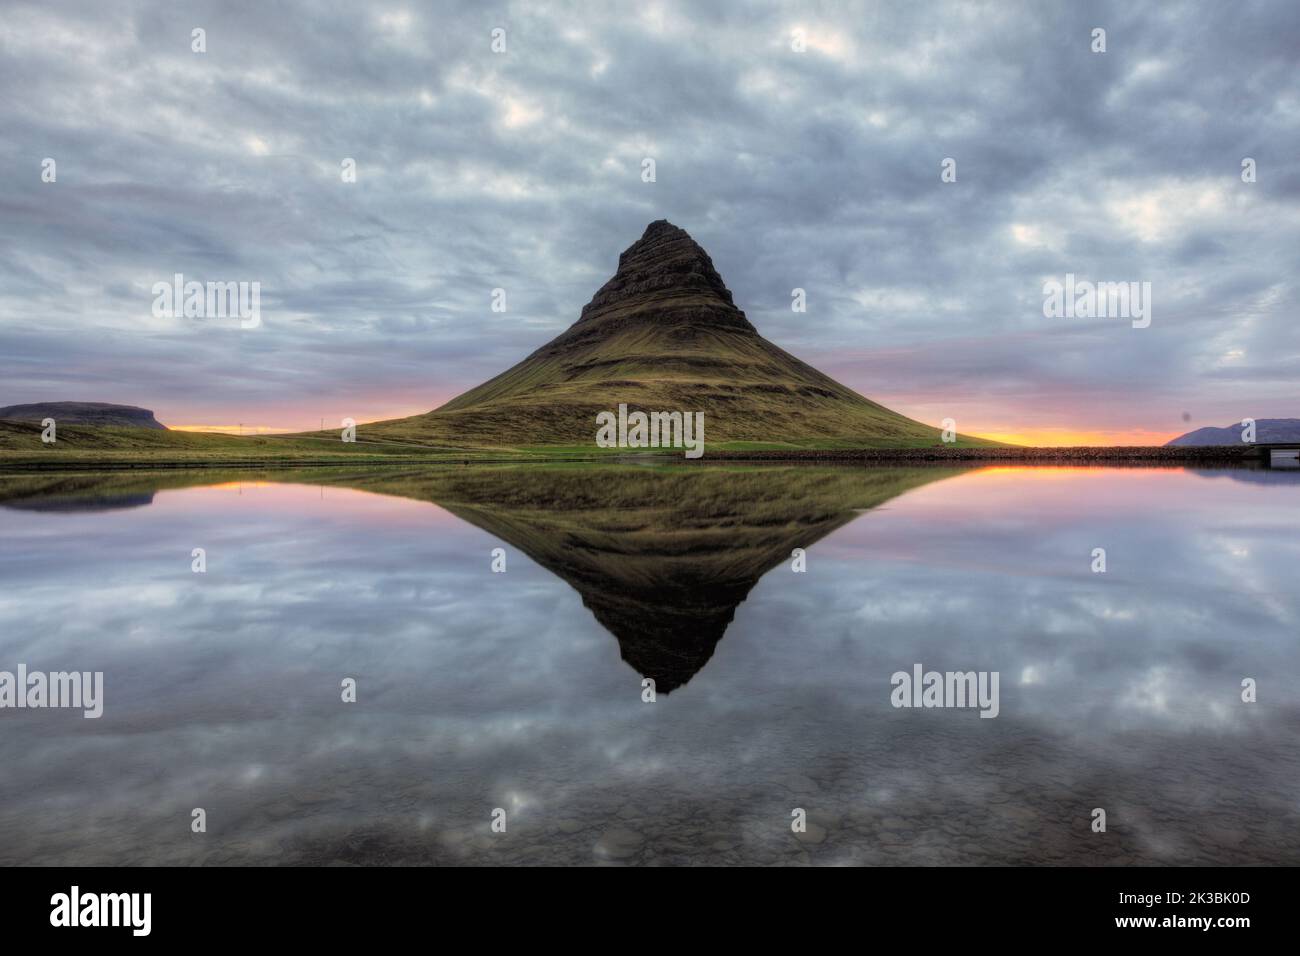 Iceland reflection Stock Photo